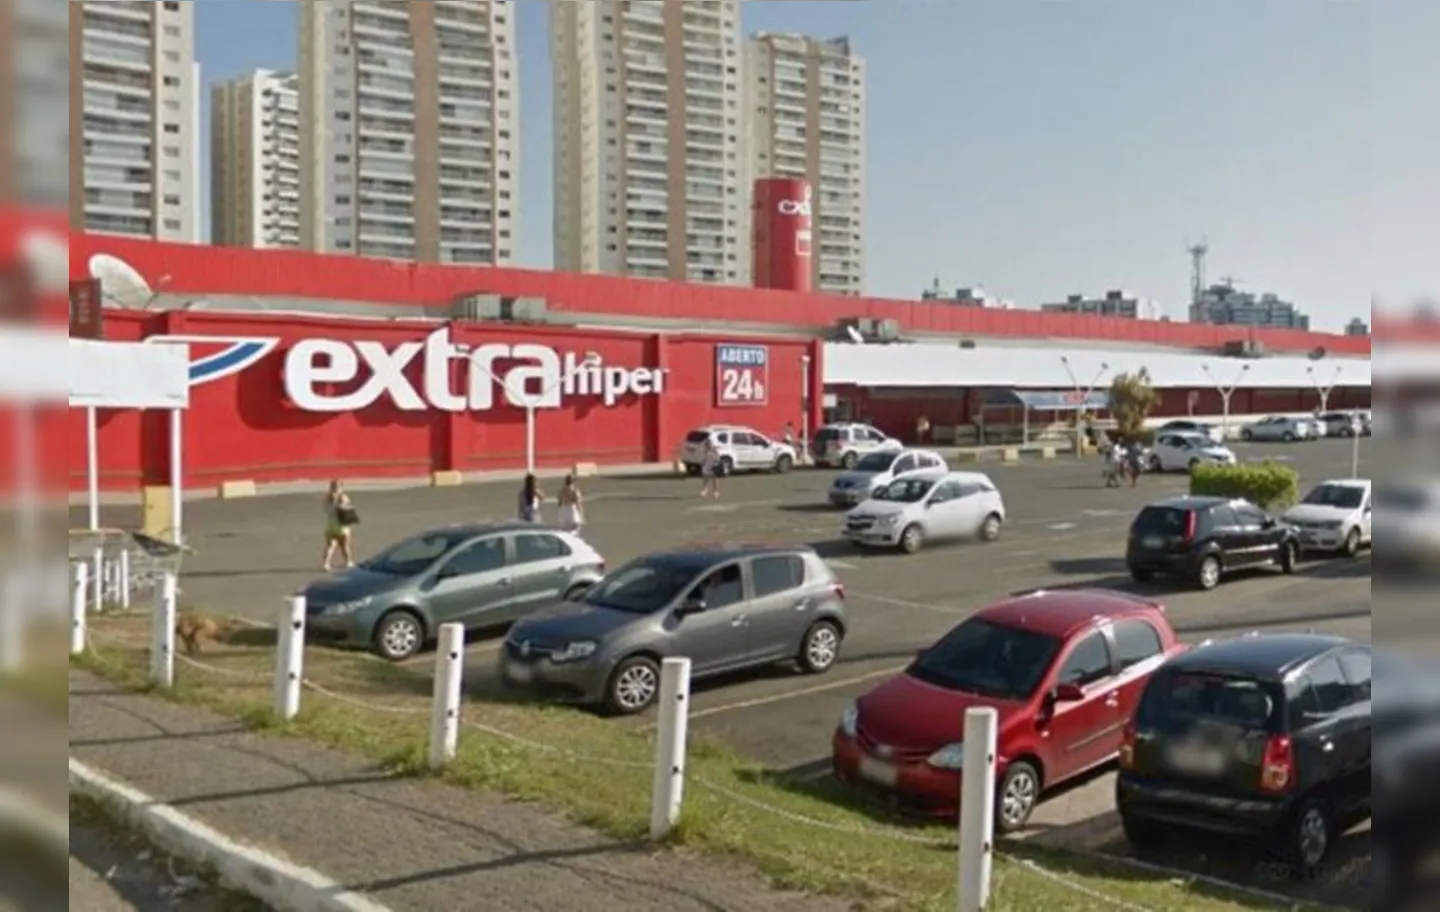 Lojas que deixarão de ser Extra ainda serão divulgadas. | Foto: Divulgação